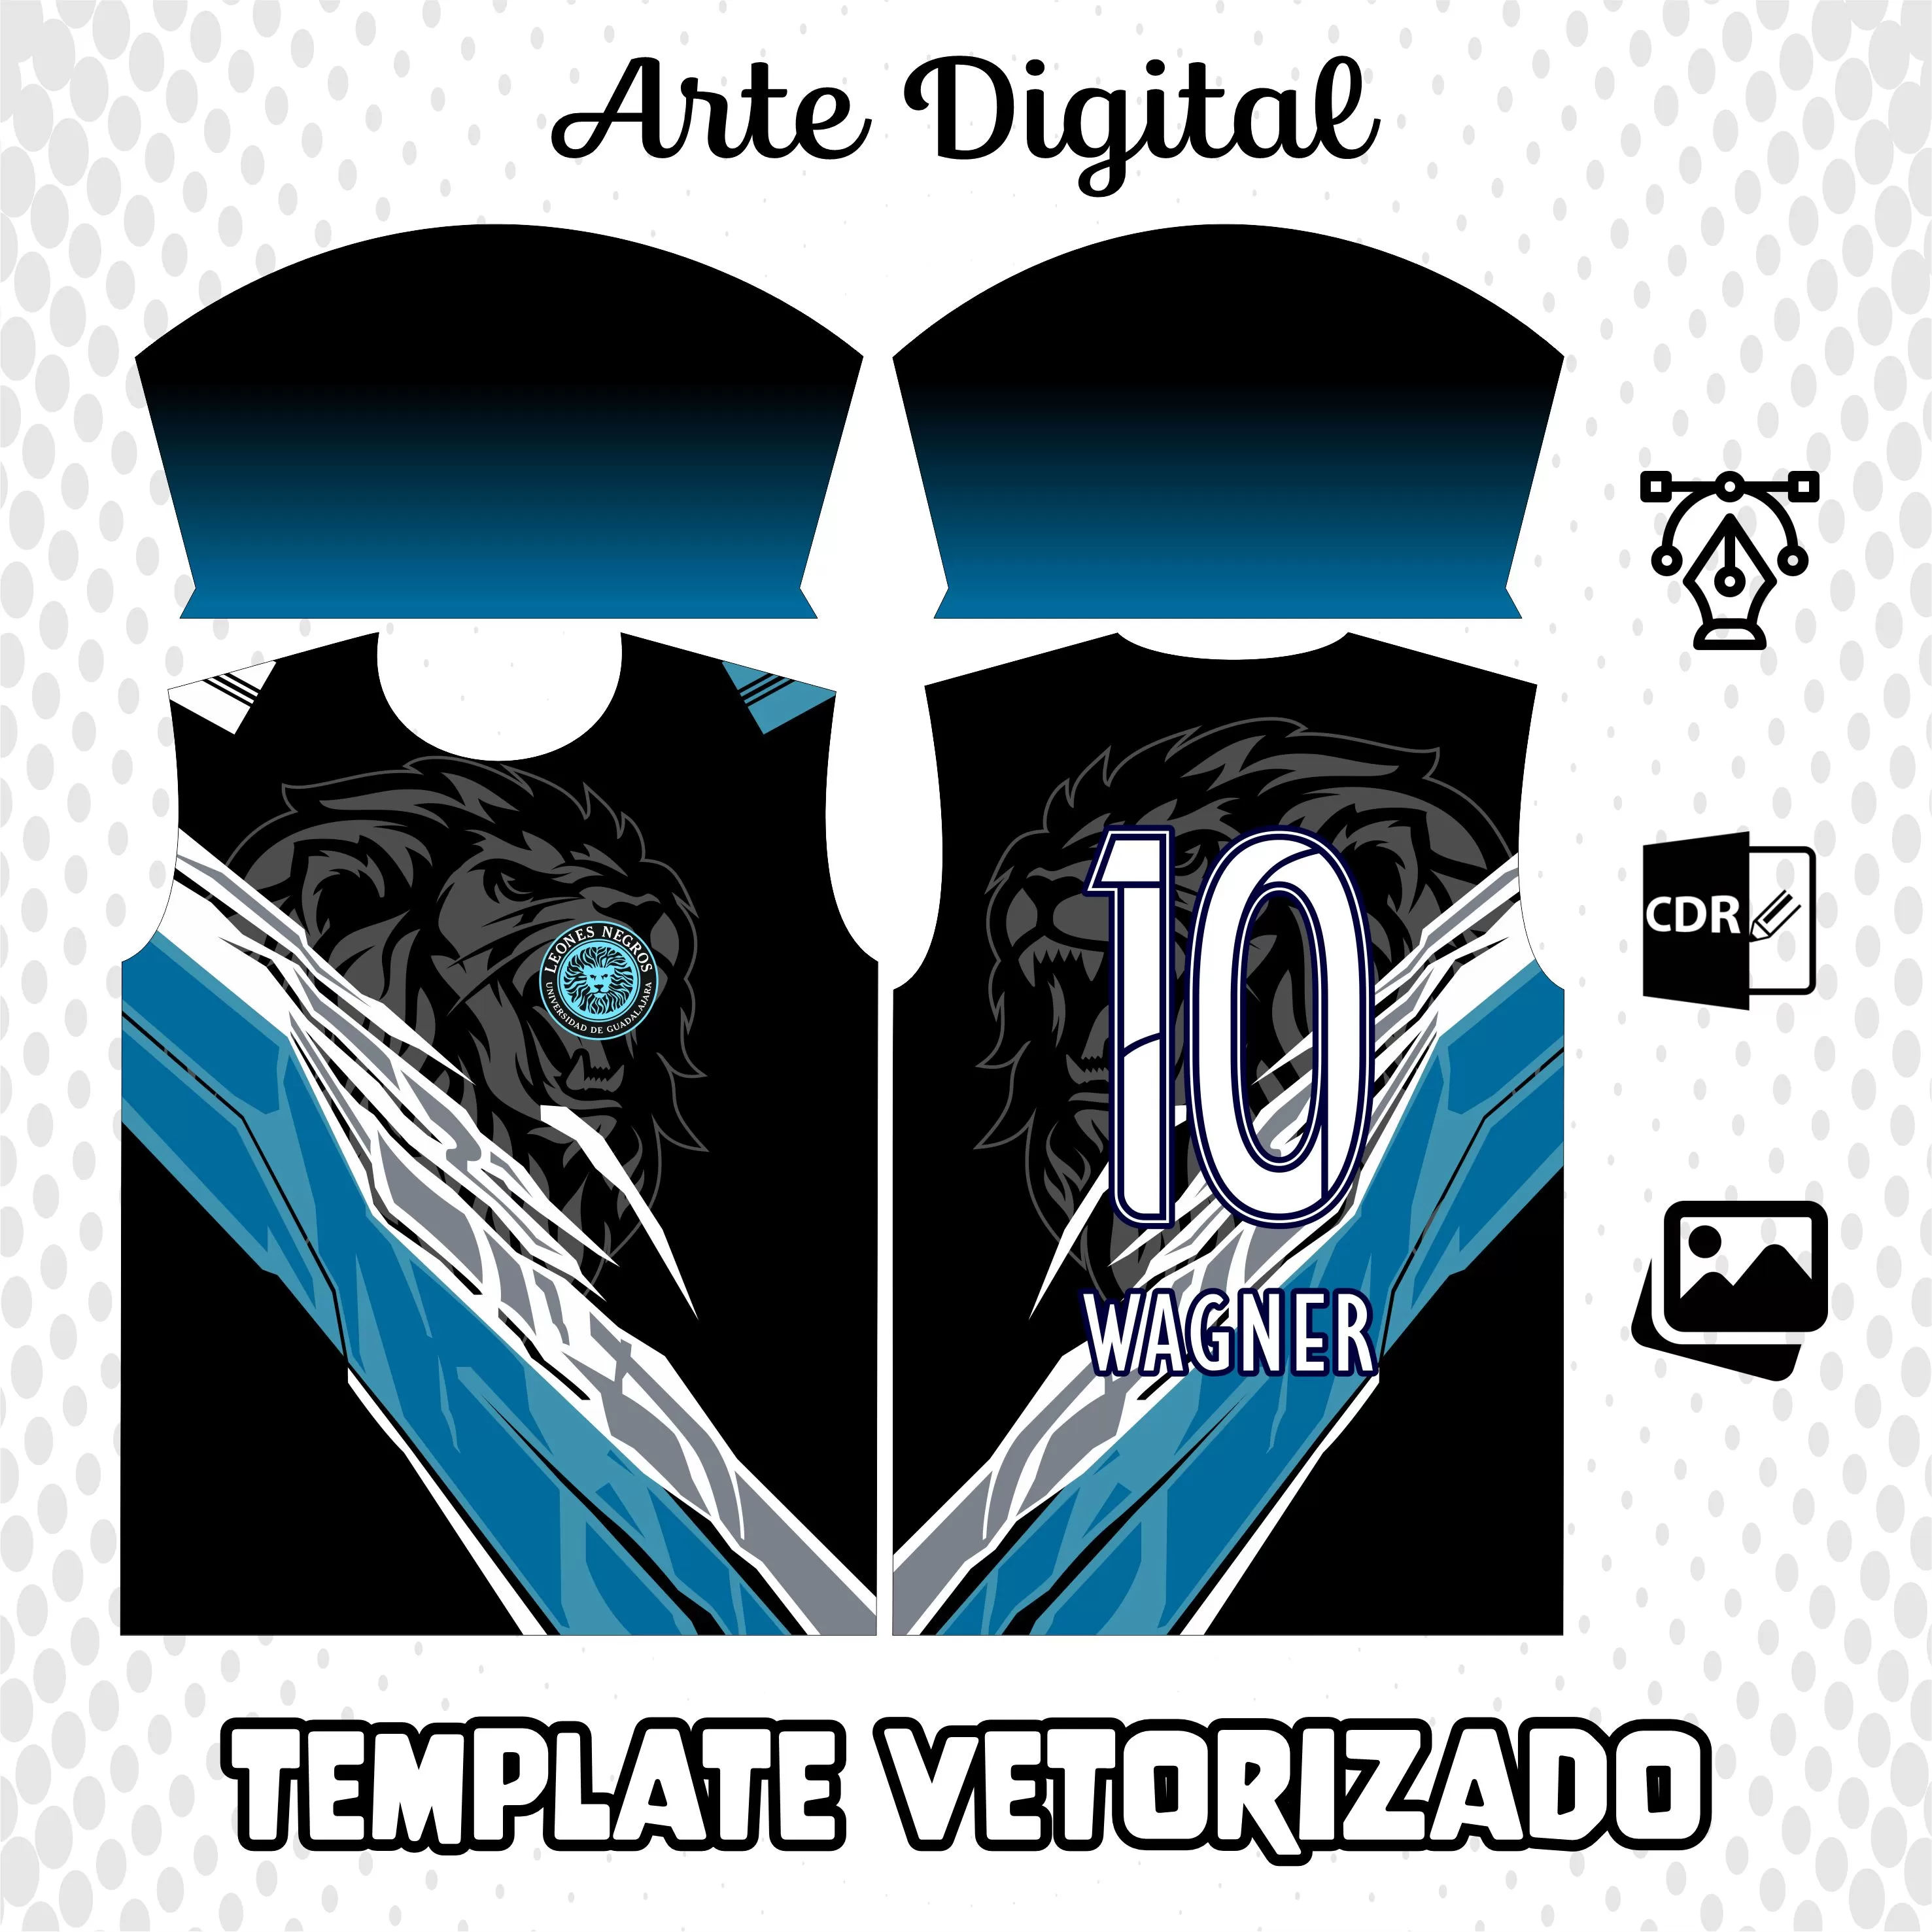 Arte Vetor Camisa Time Brasil 2023